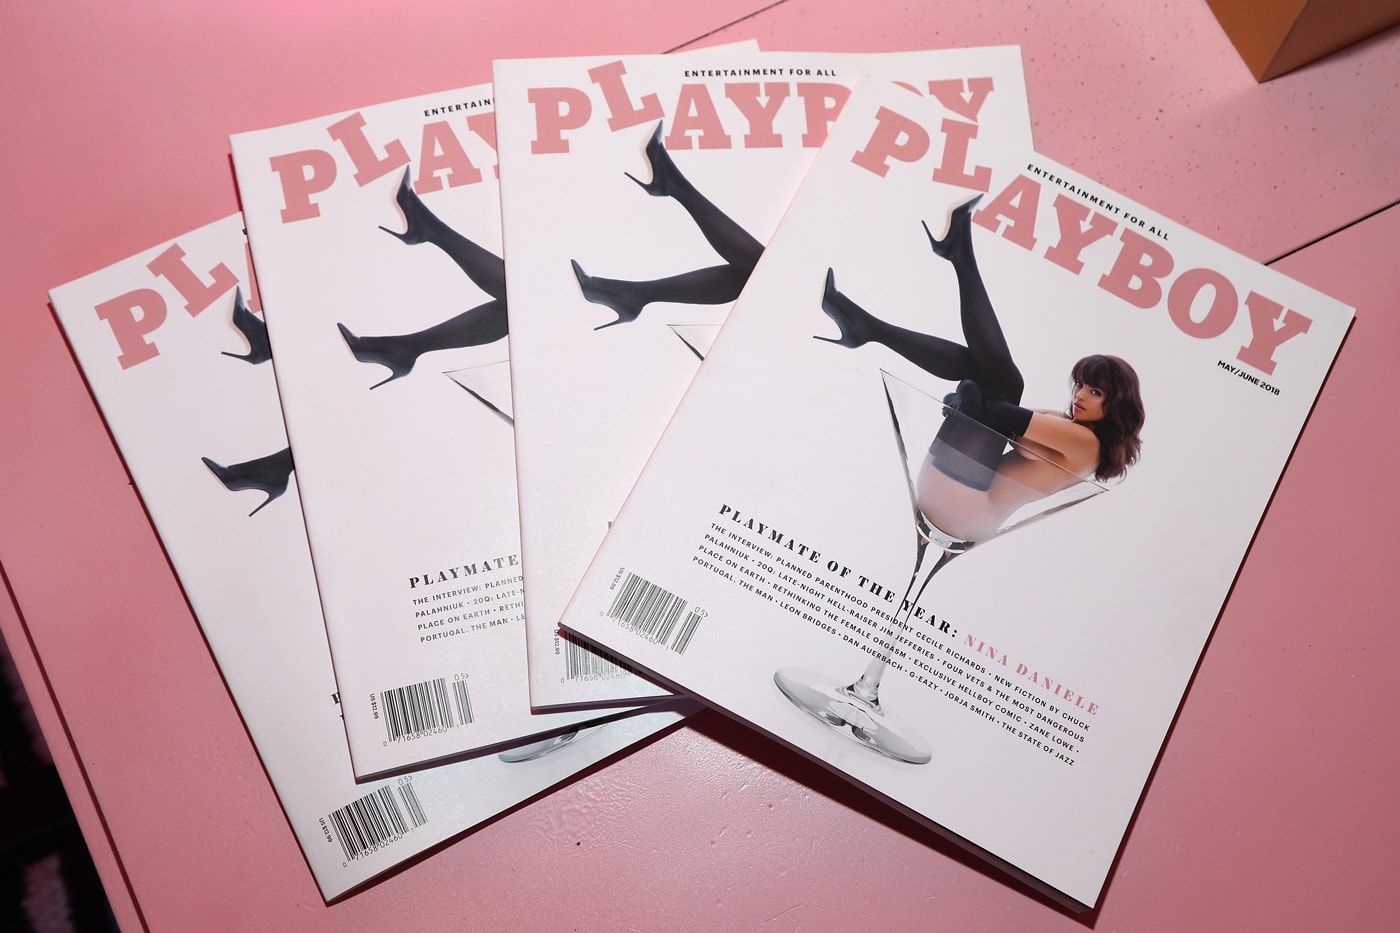 プレイボーイ 米雑誌『PLAYBOY』が紙媒体発行の終了を発表 Playboy Suspends Print Magazine edition After 66 Years adult models playmates hugh hefner coronavirus economic difficulties 